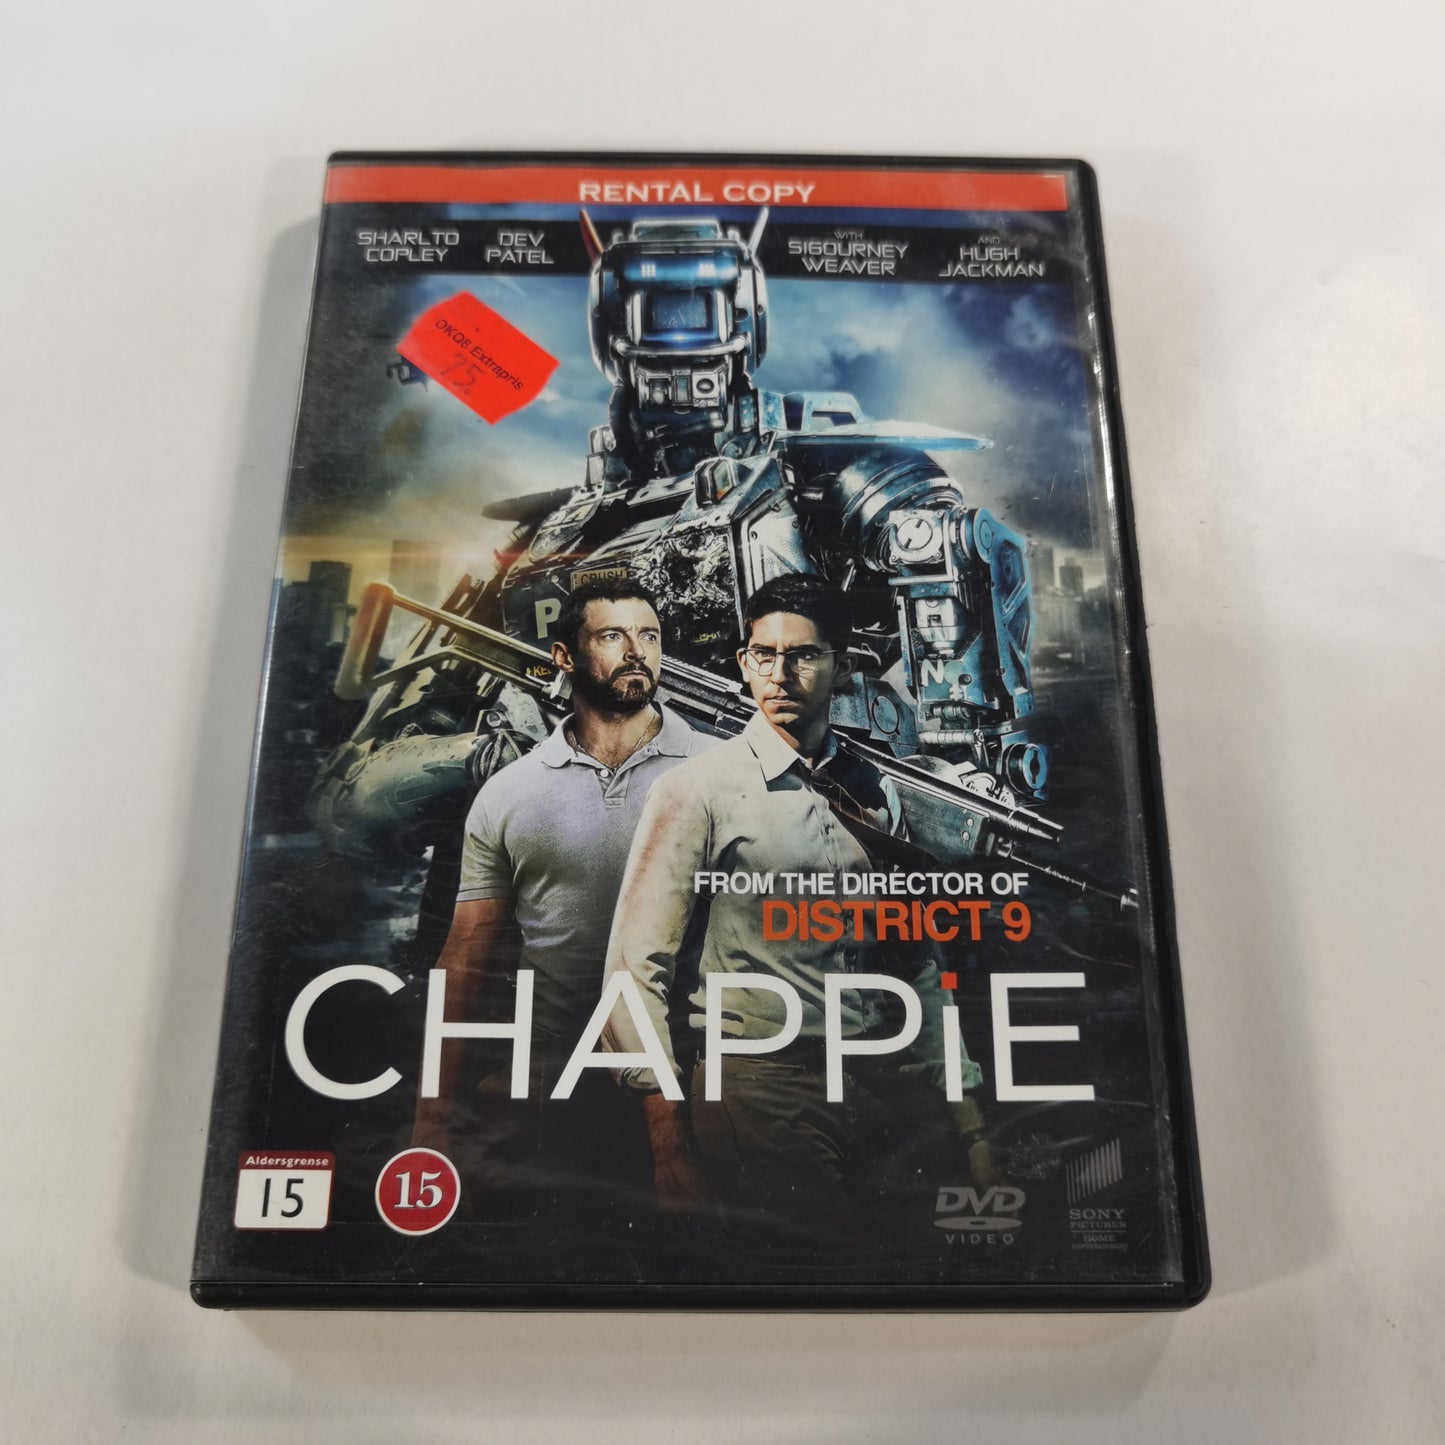 Chappie (2015) - DVD SE NO DK FI 2015 RC